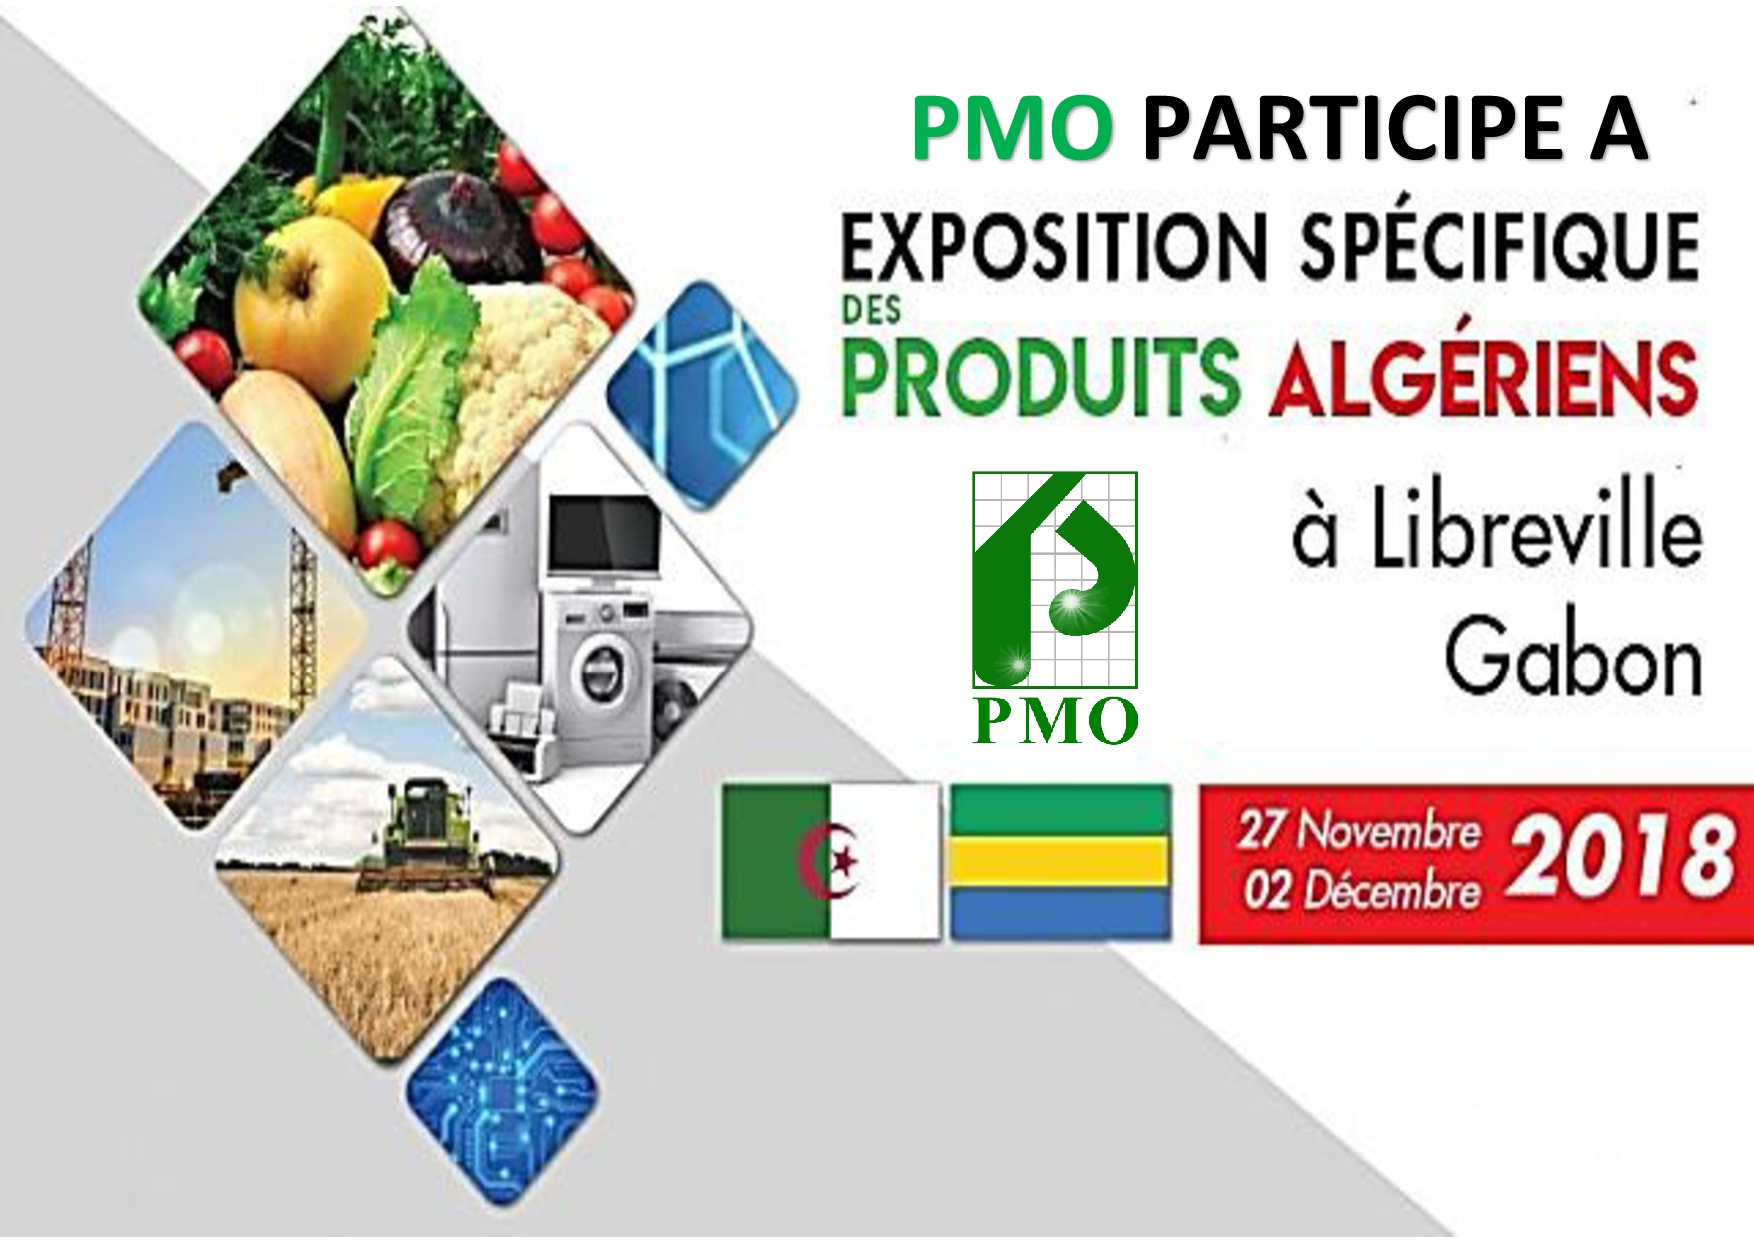 PMO Participe LIBREVILLE au GABON DU 27 novembre au 02 décembre au jardin botanique de Libreville